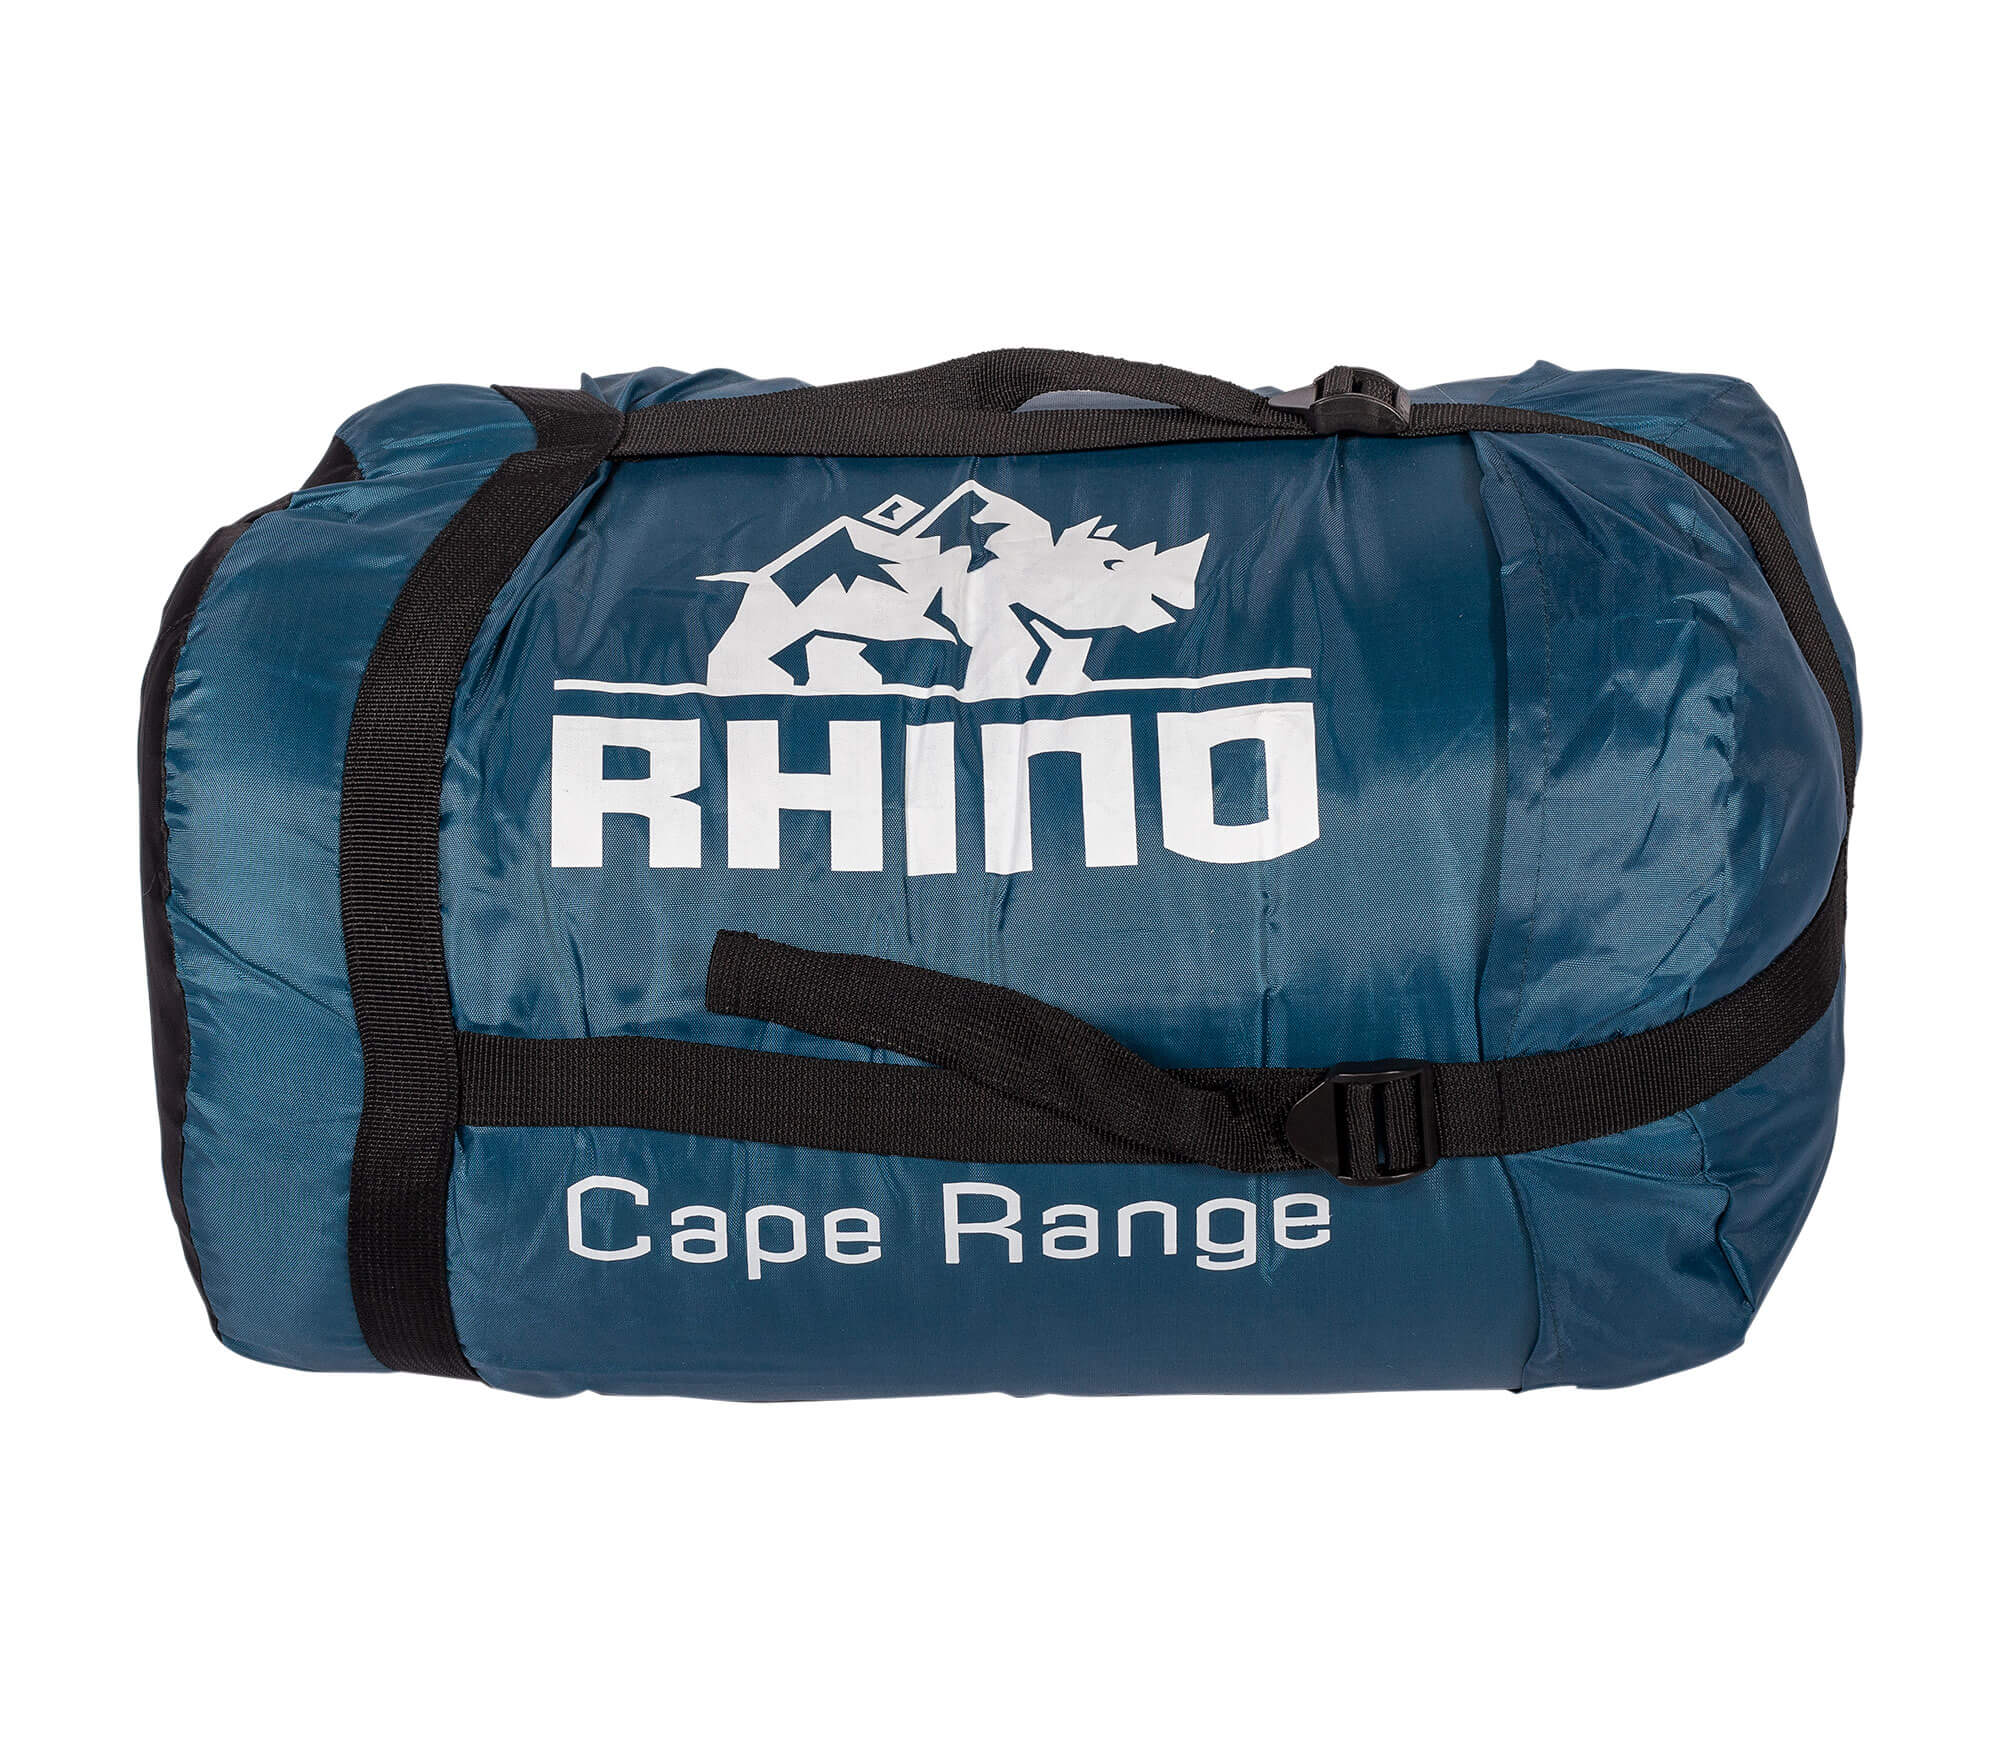 Happy Rhino Cape Range - Charcoal Grey